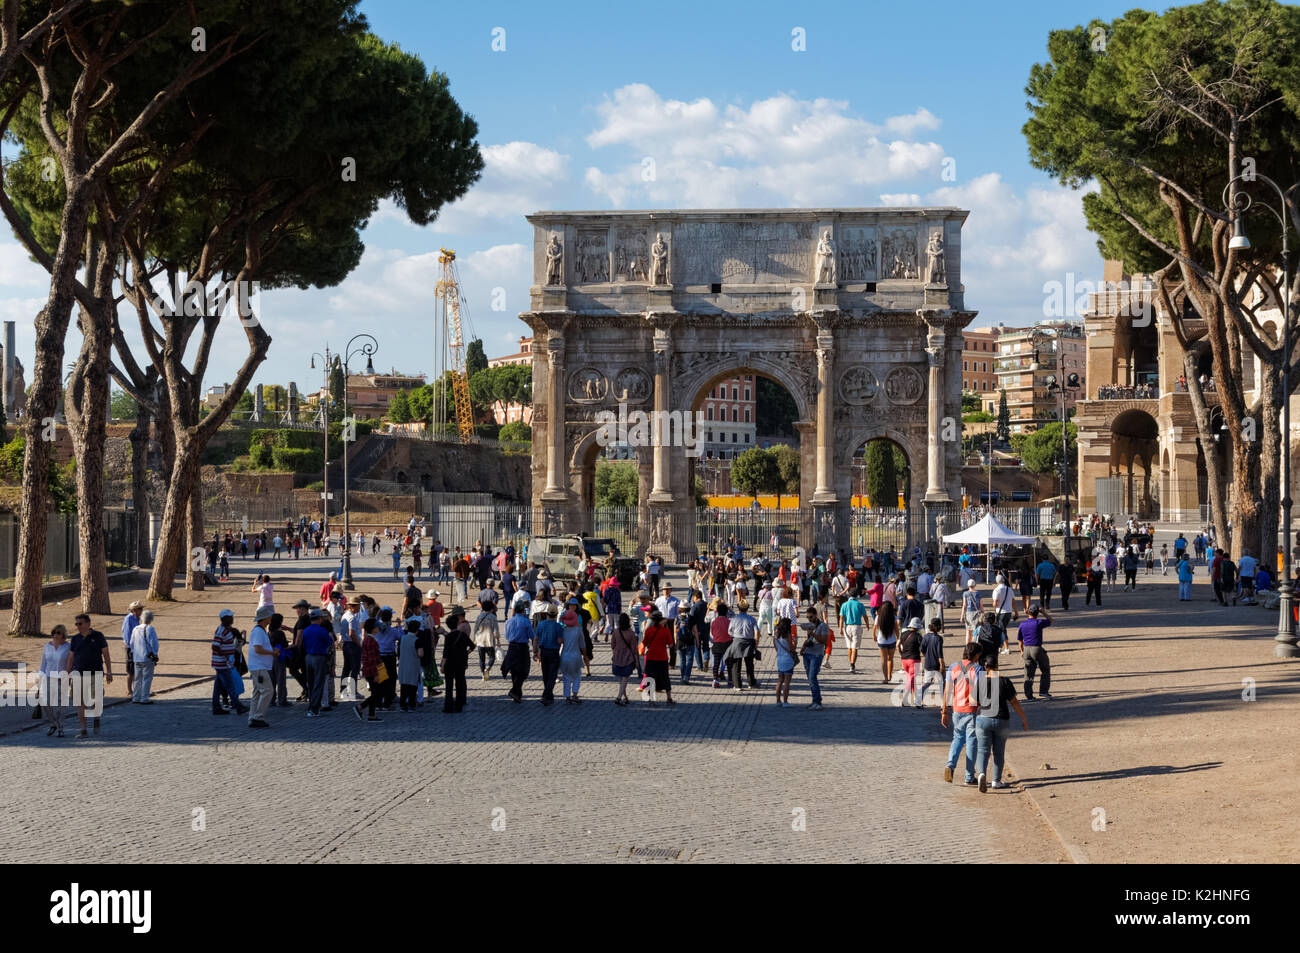 Les touristes en face de l'Arc de Constantin, Rome, Italie Banque D'Images